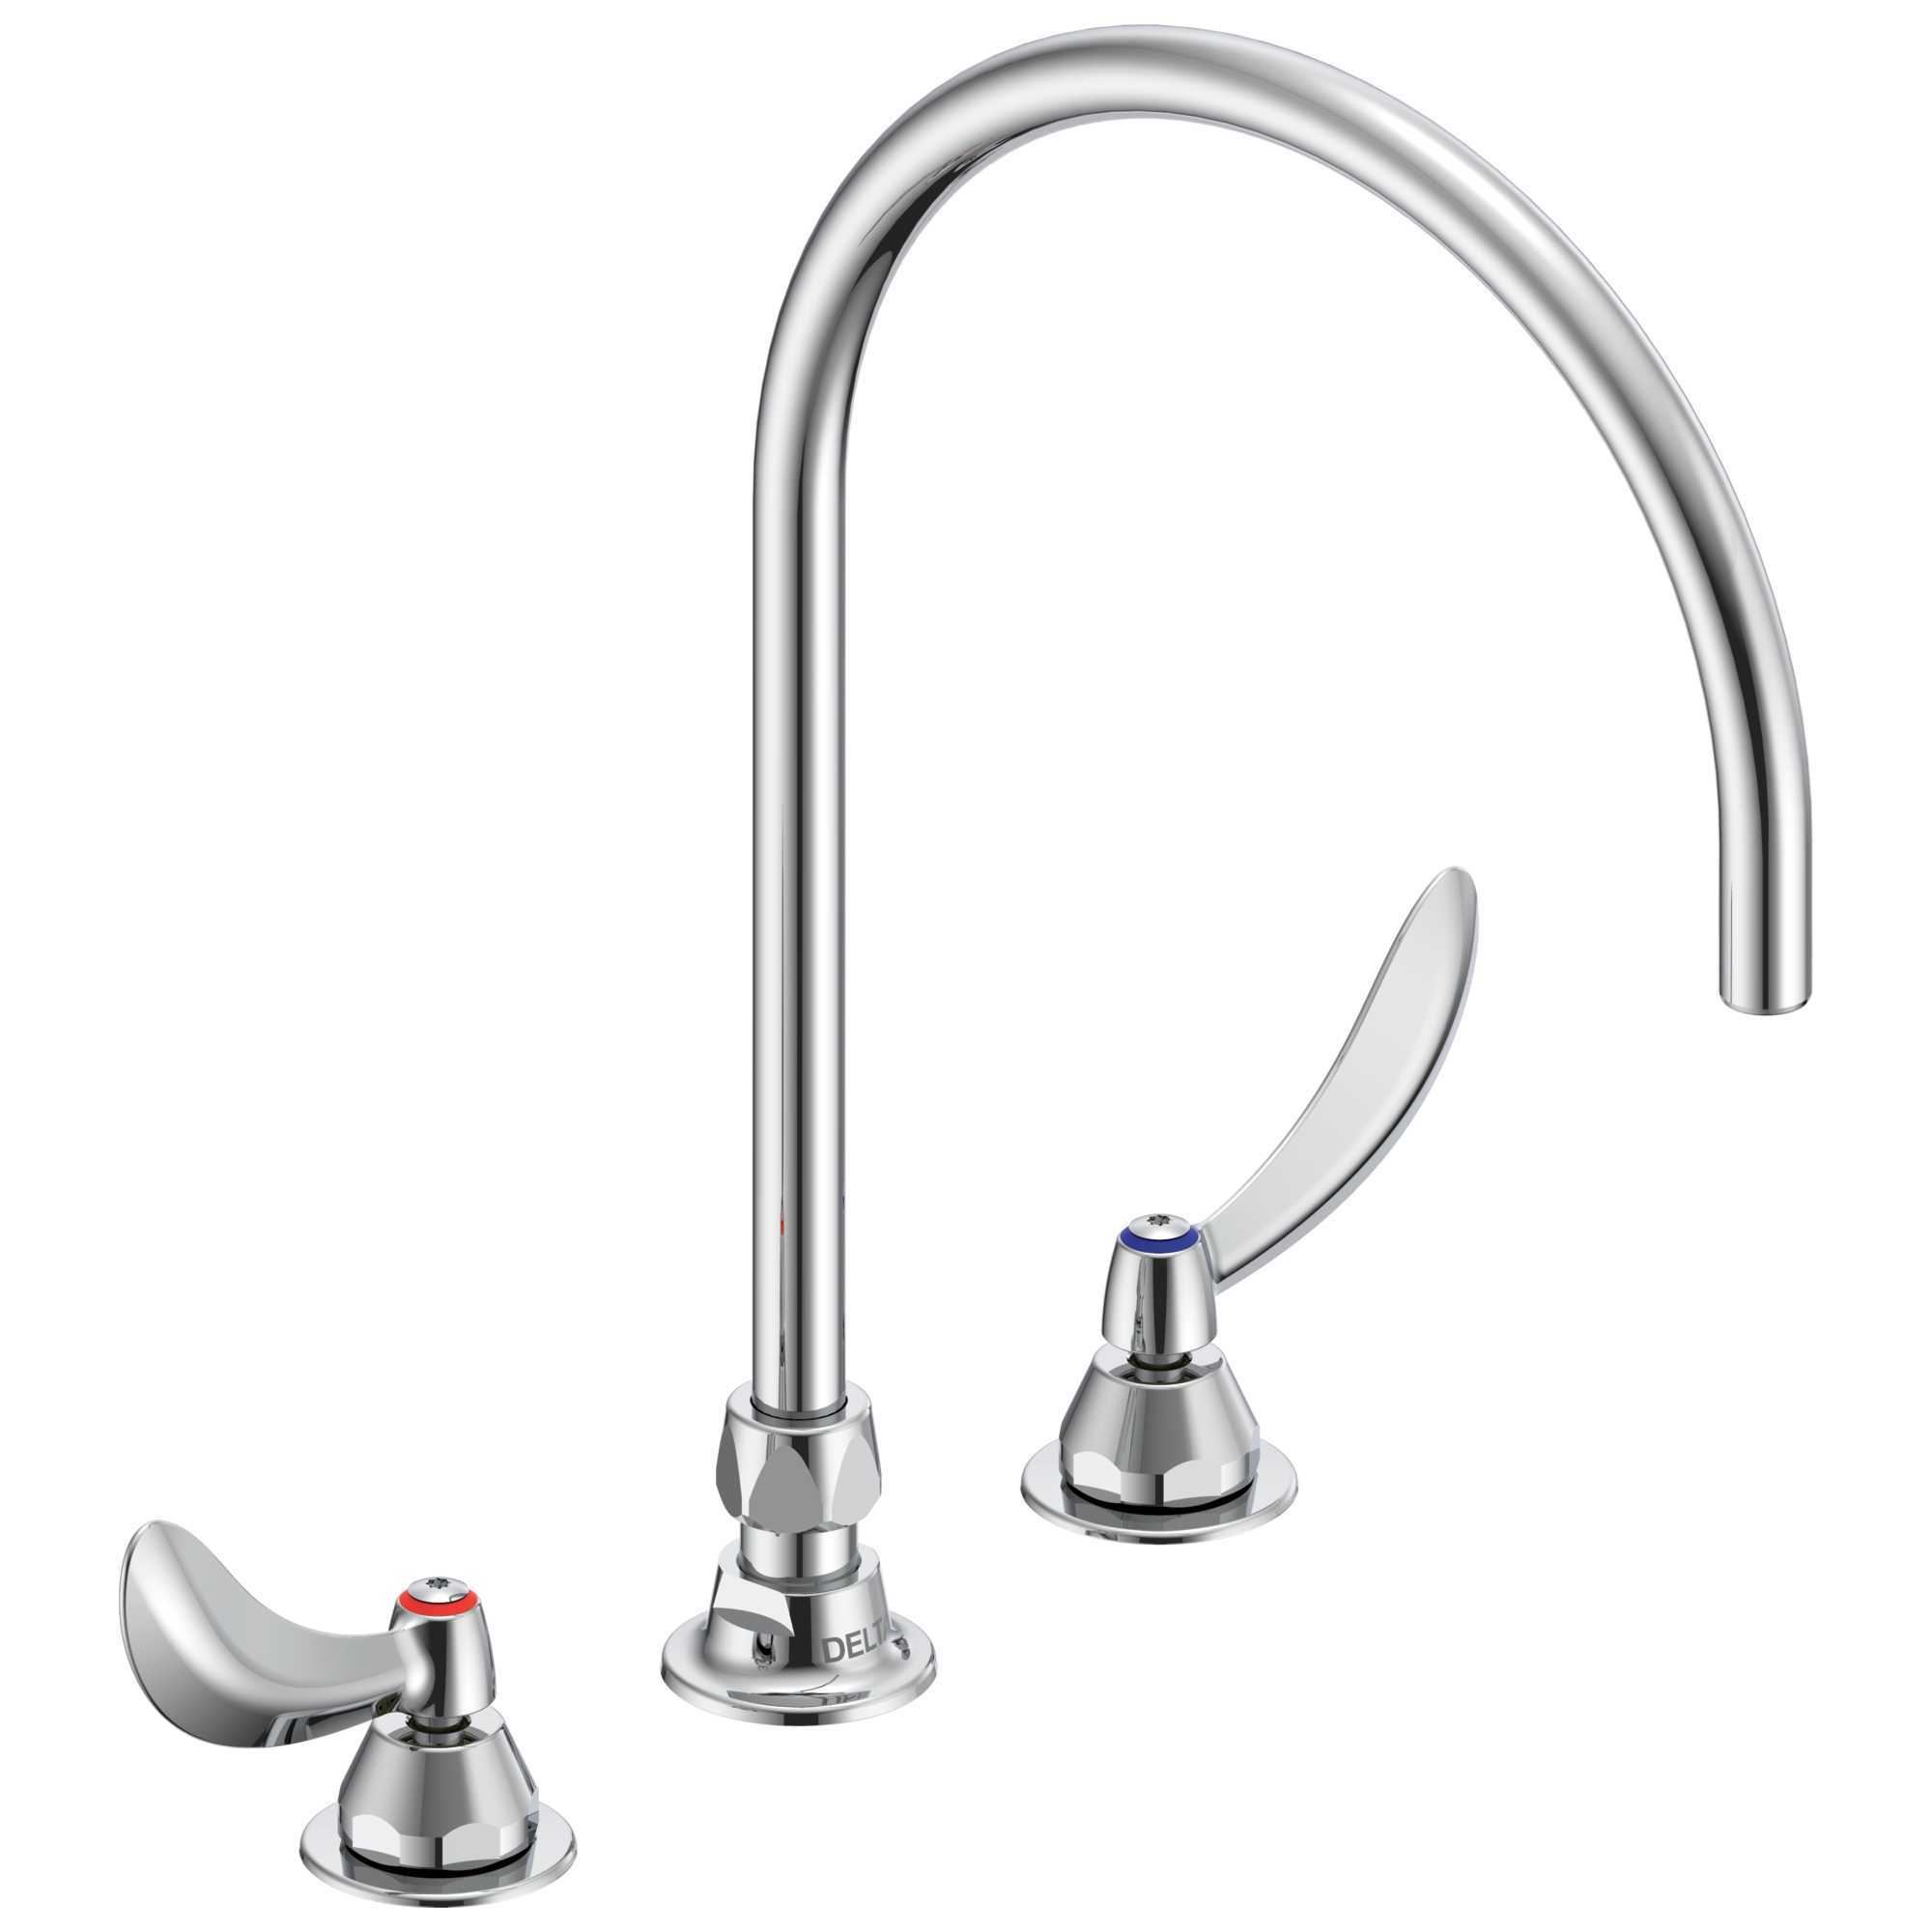 Delta 27C2974-R7 Sink Faucet